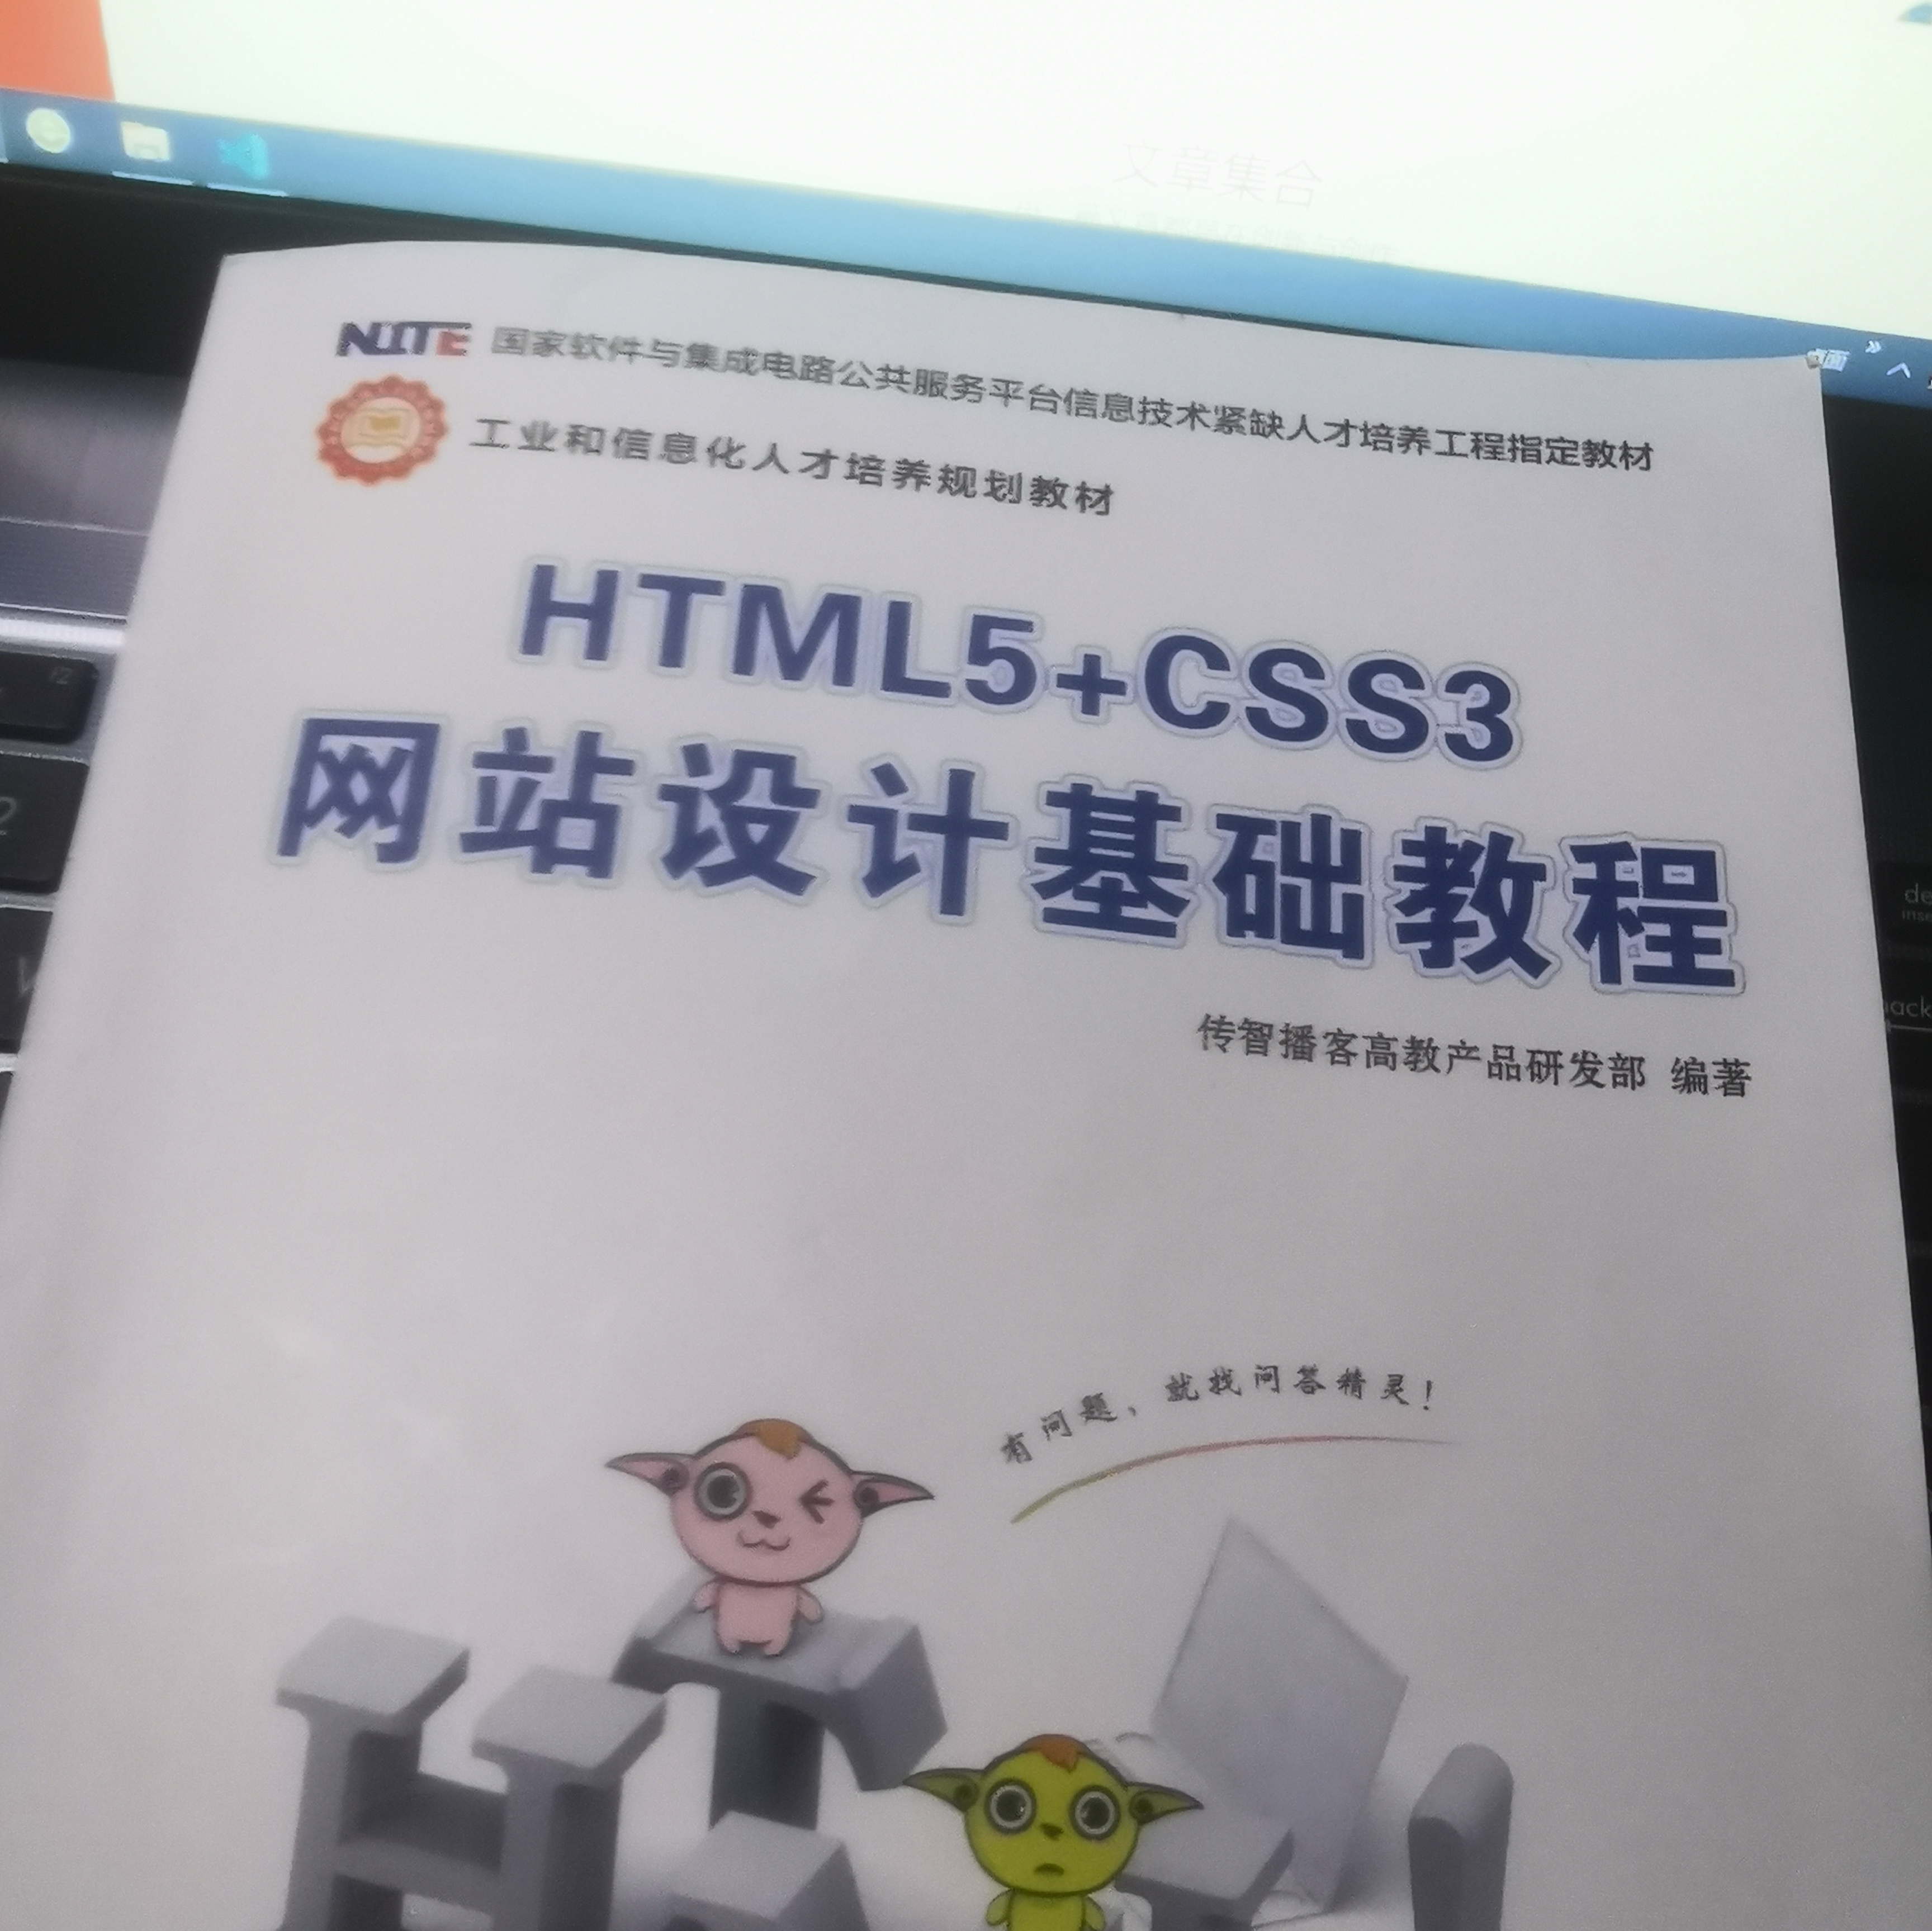 HTML5+CSS3网站设计基础教程书籍